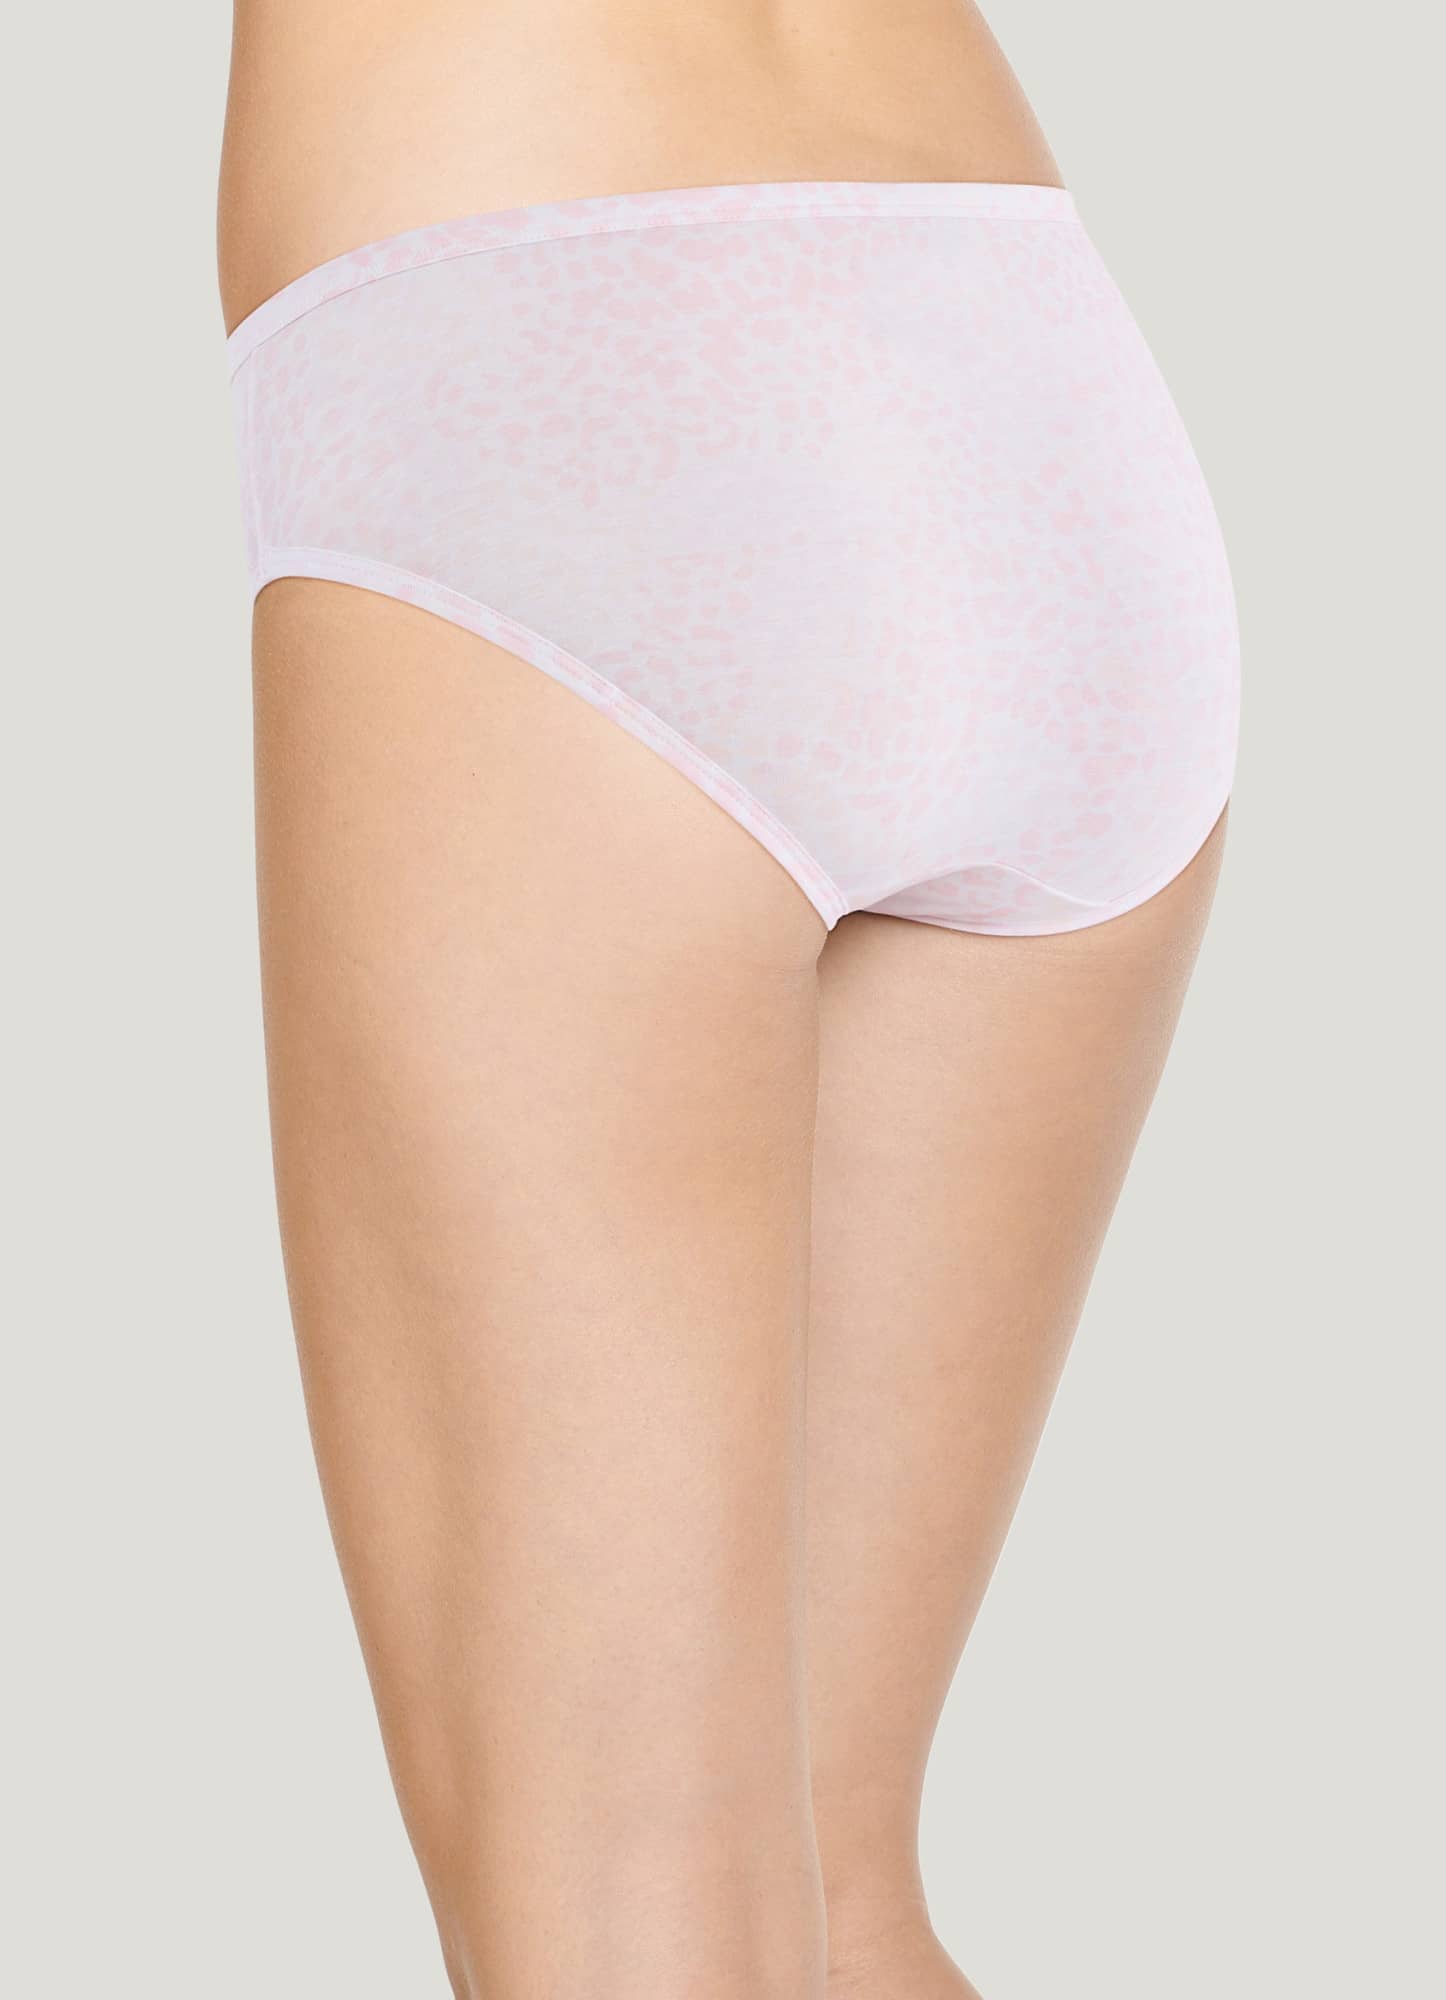 Jockey, Intimates & Sleepwear, Jockey Elance Bikini Panties 3 Nip Size 6m  0 Cotton Retail 24